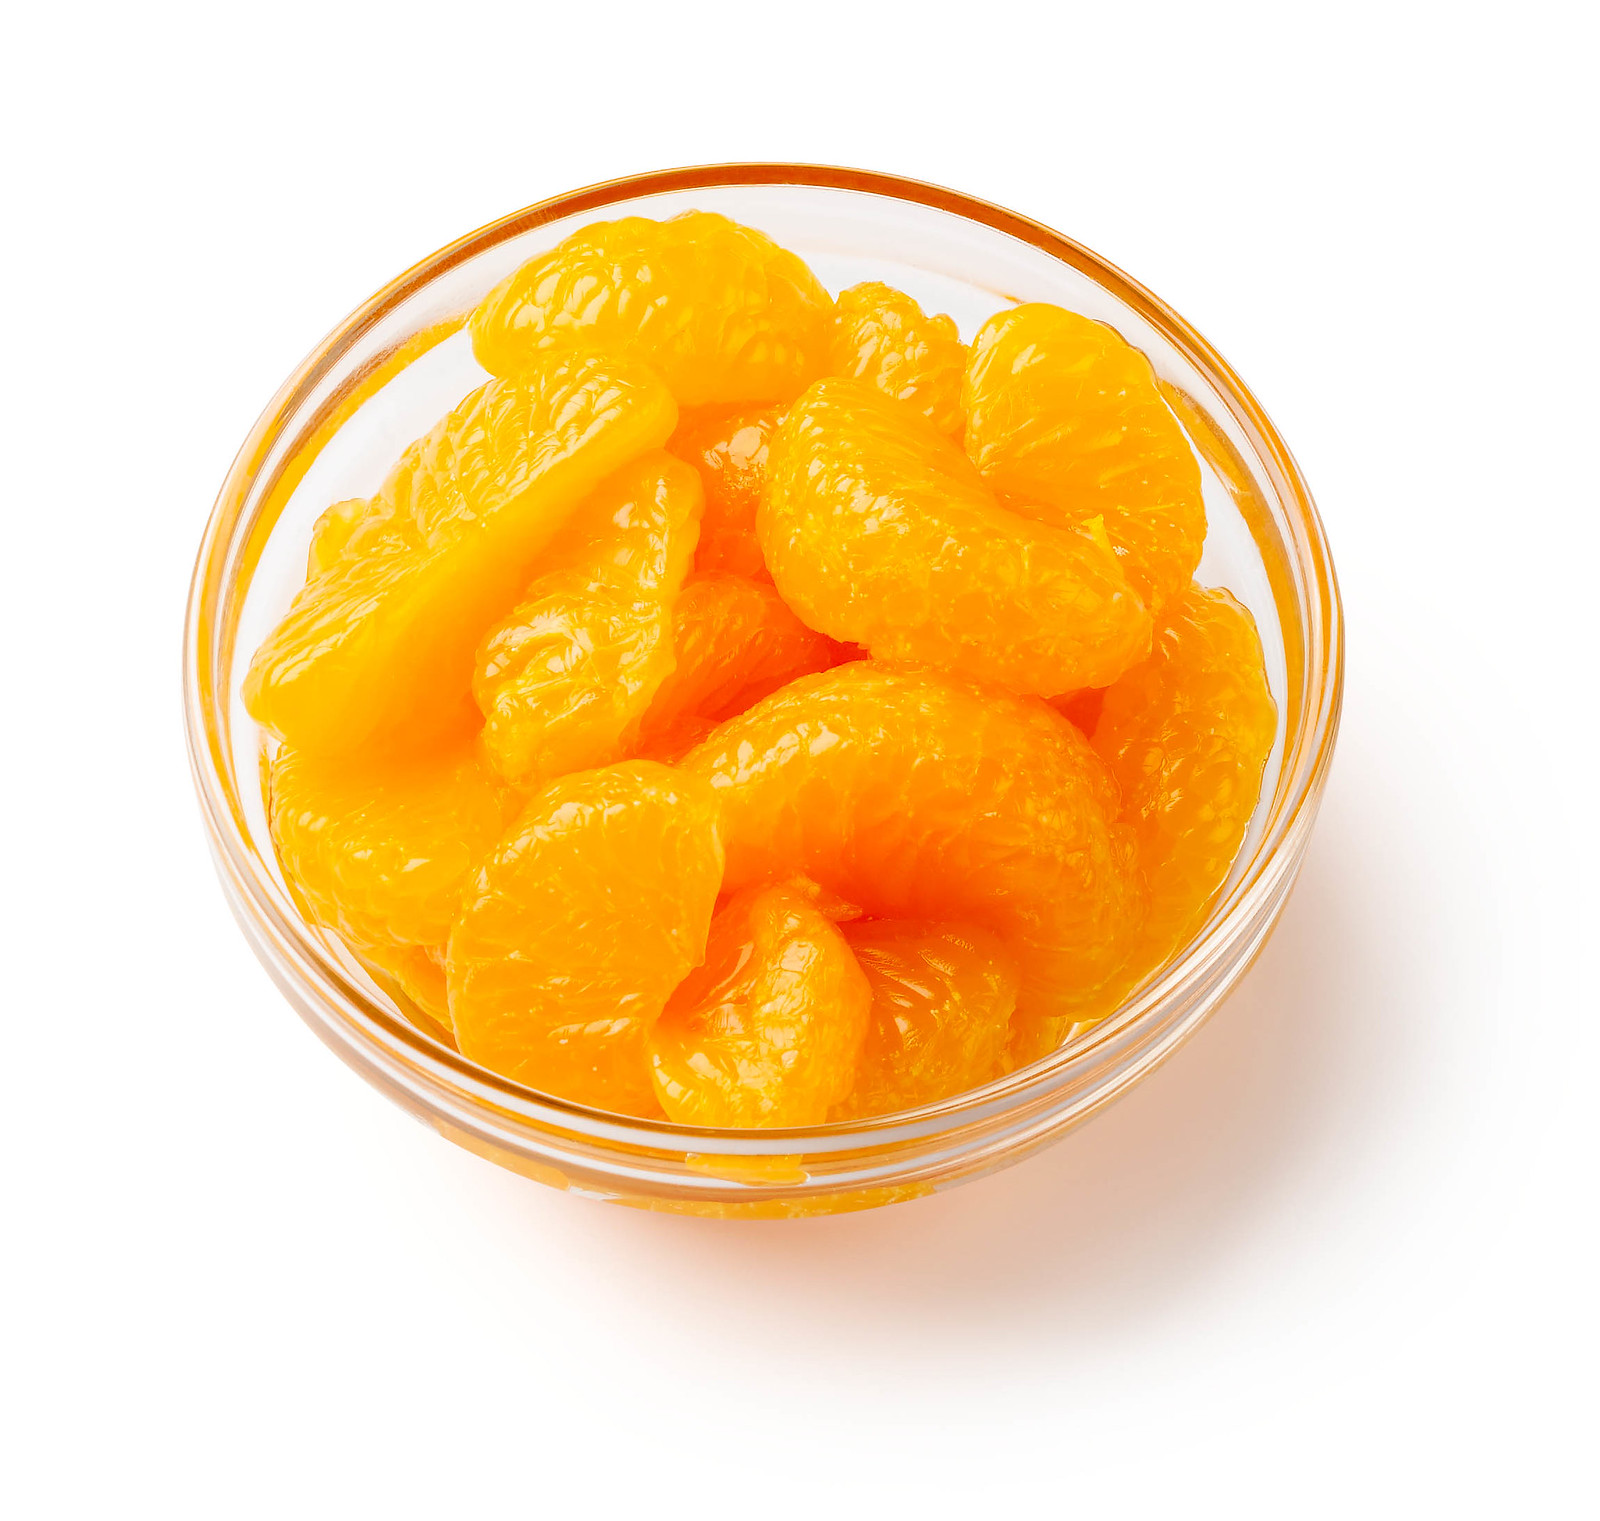 Mandarin orange slices in clear bowl